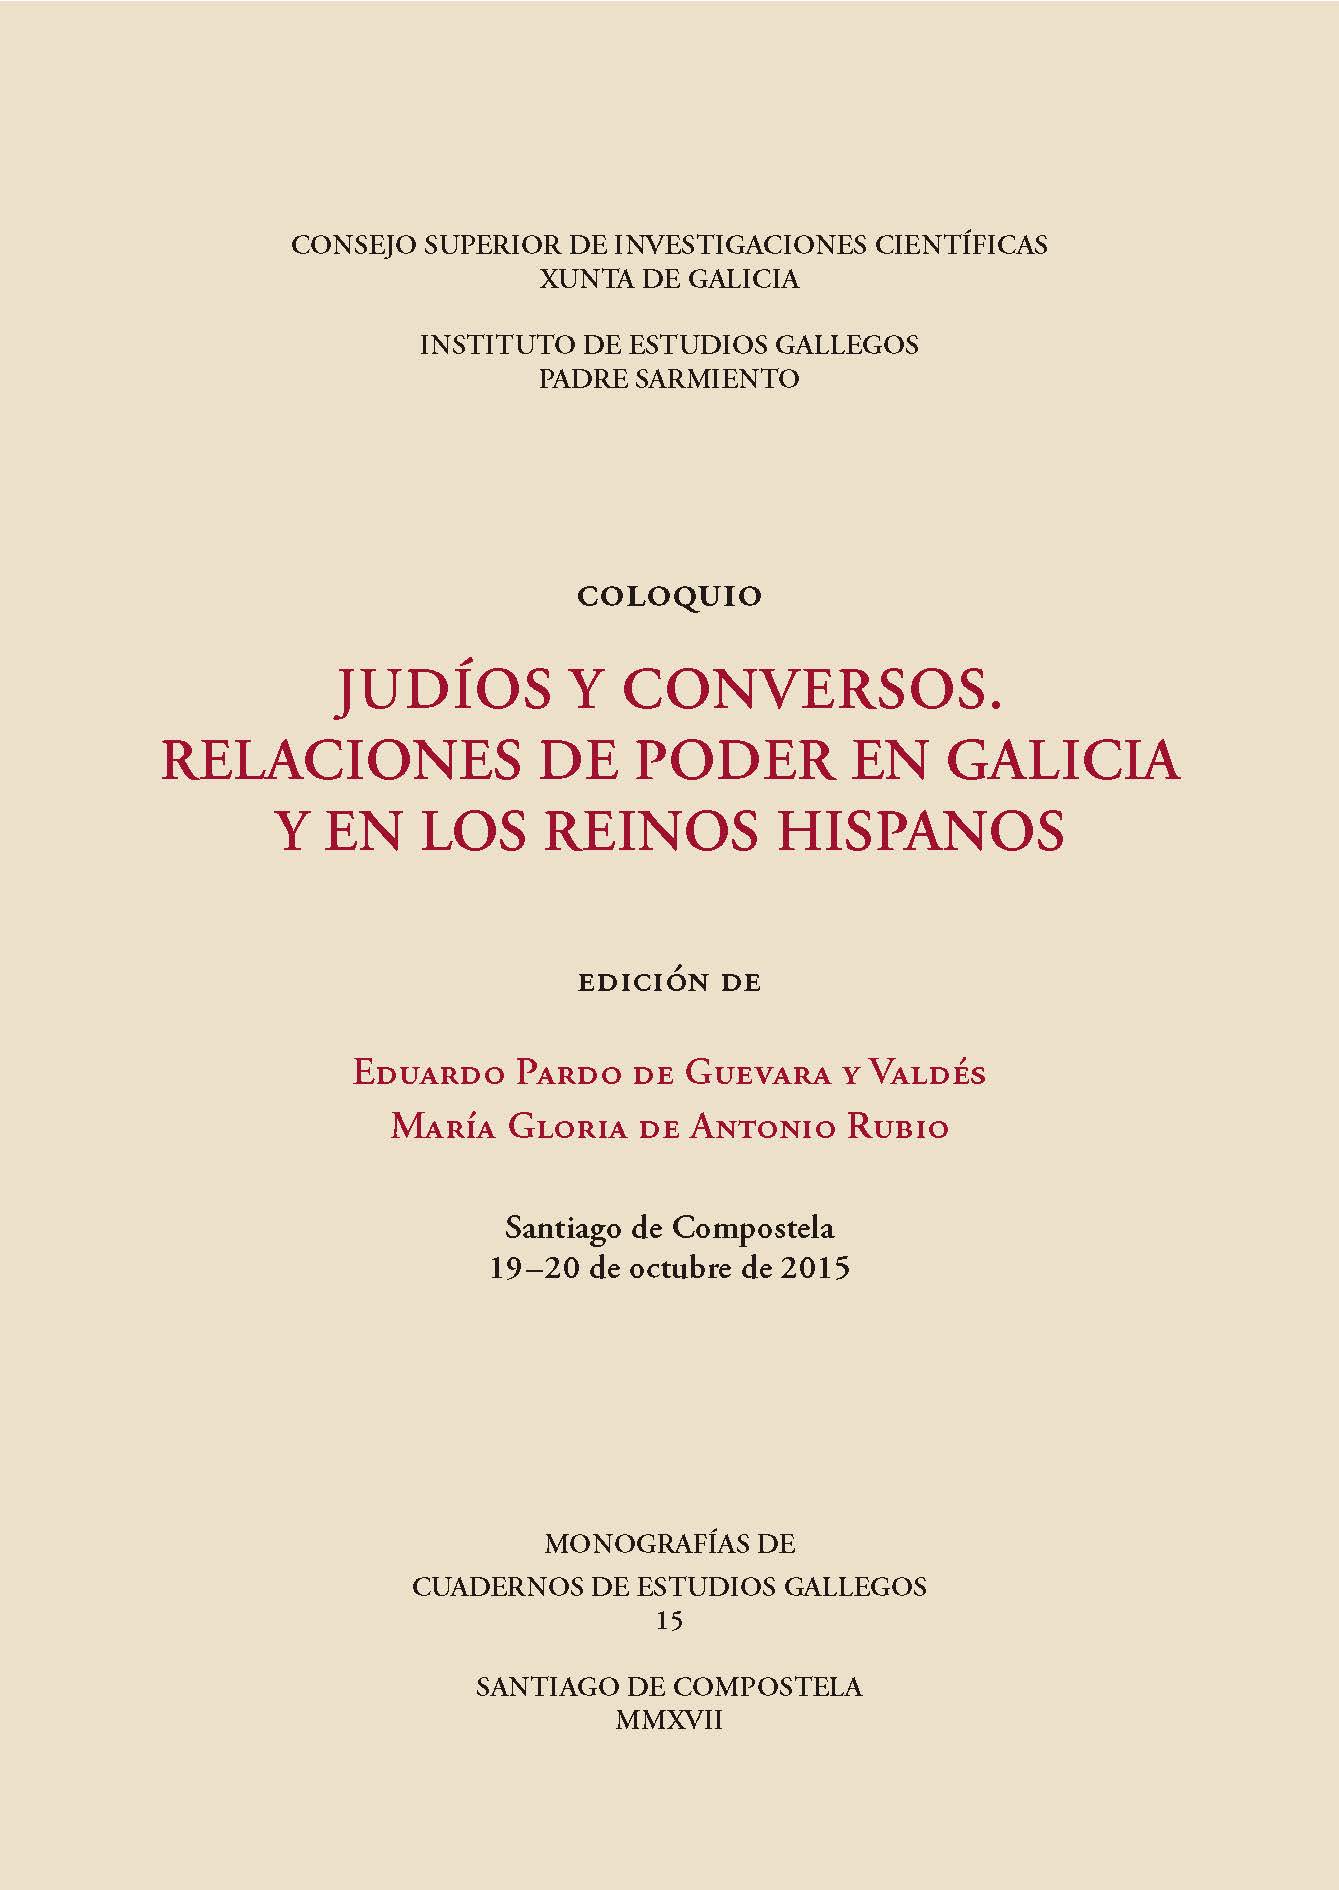 Judíos y conversos. Relaciones de poder en Galicia y en los reinos hispanos